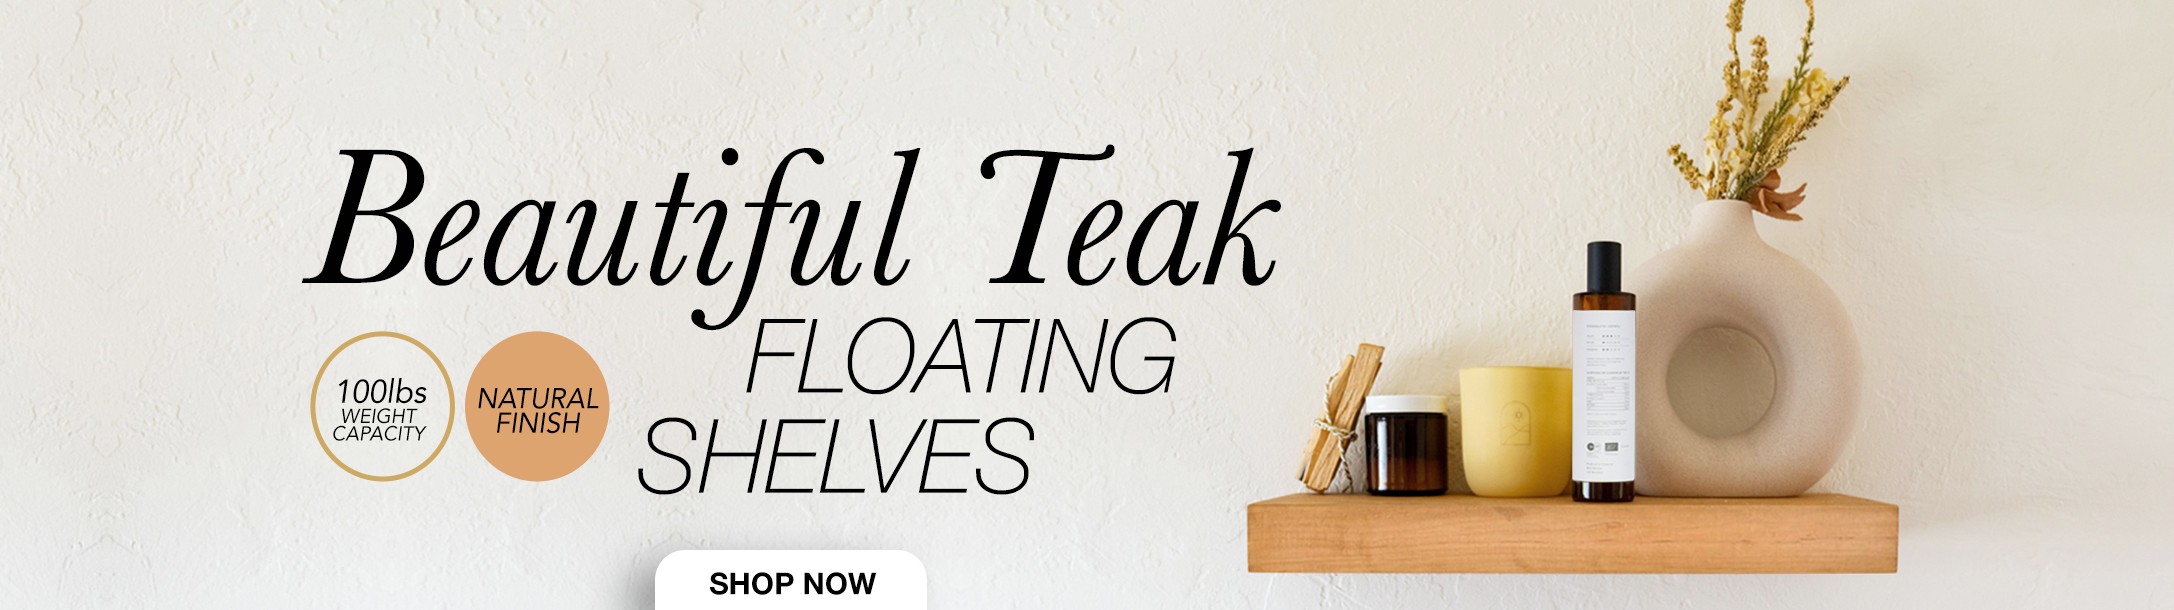 Teak Floating Shelves